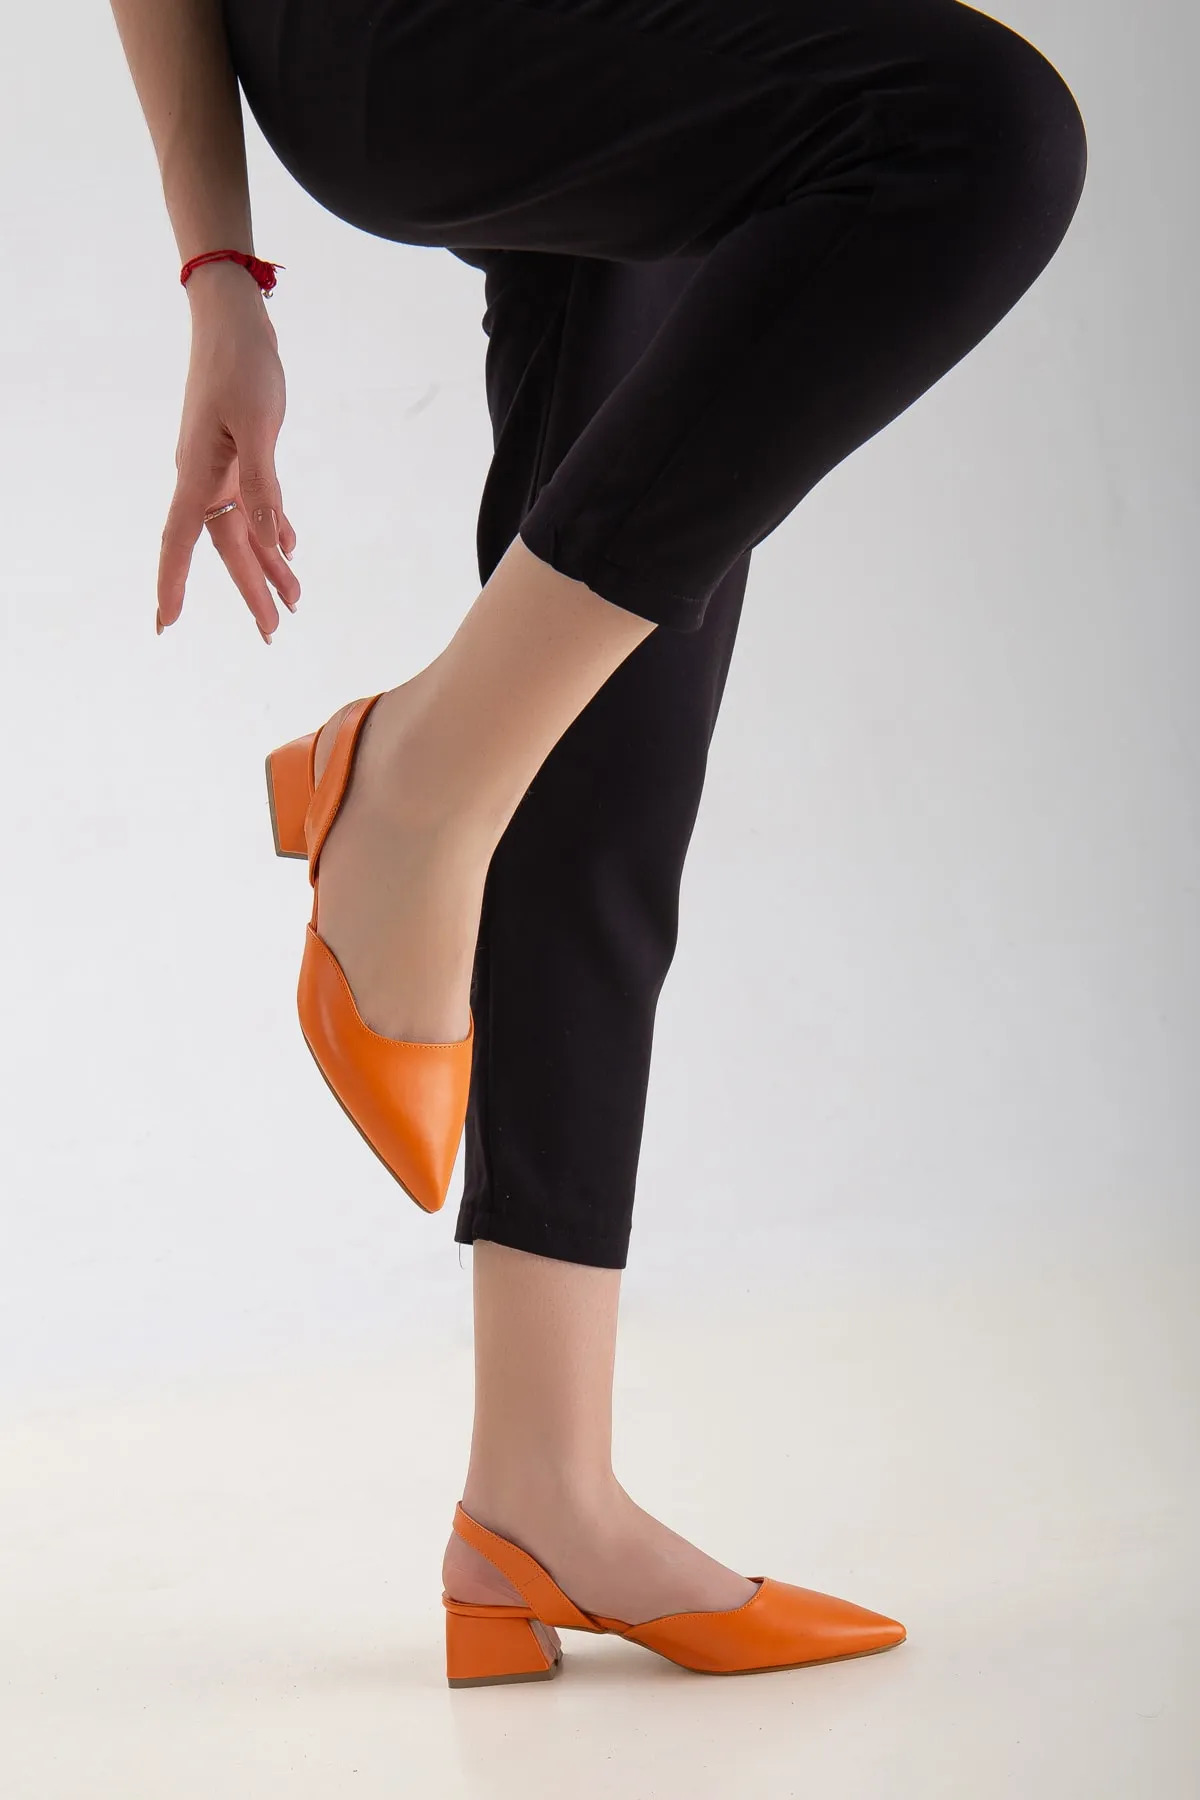 Kadın Turuncu Kısa Kalın Topuklu Günlük Şık Ayakkabı